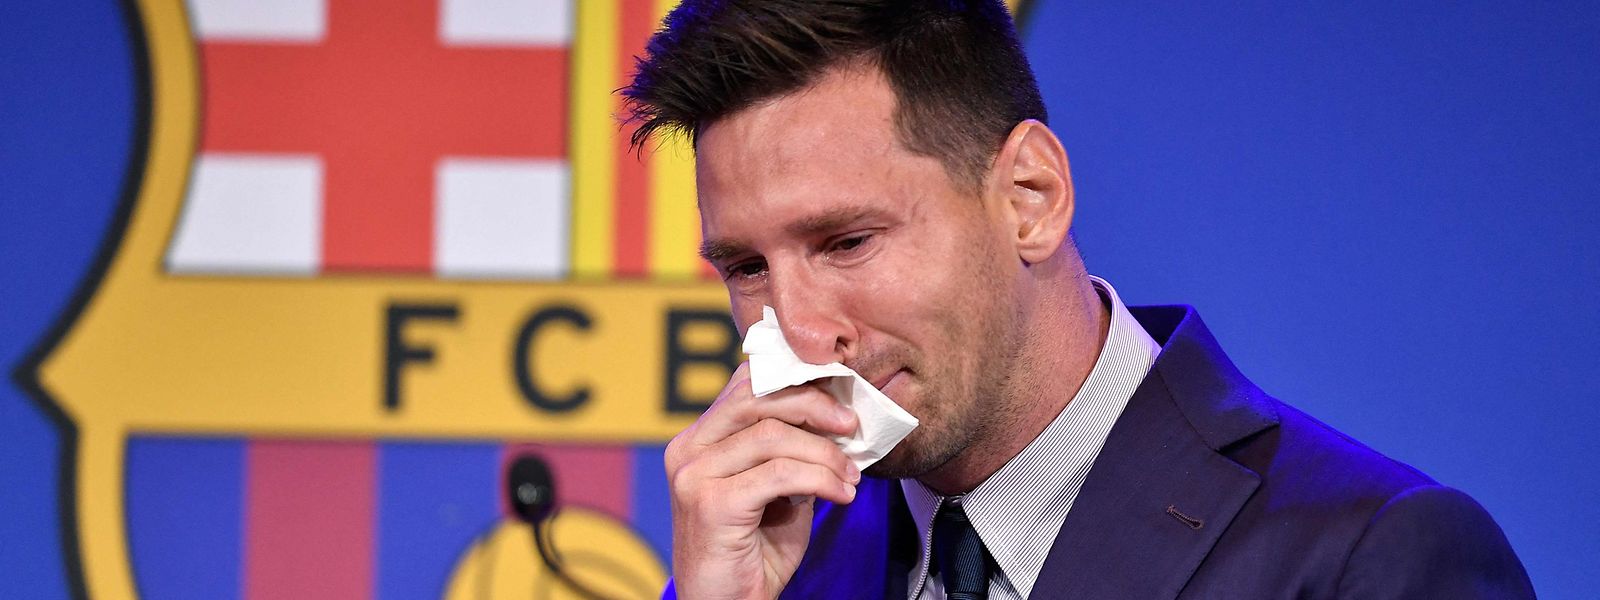 Das war selbst für einen Weltfußballer zu viel: Für Lionel Messi enden 